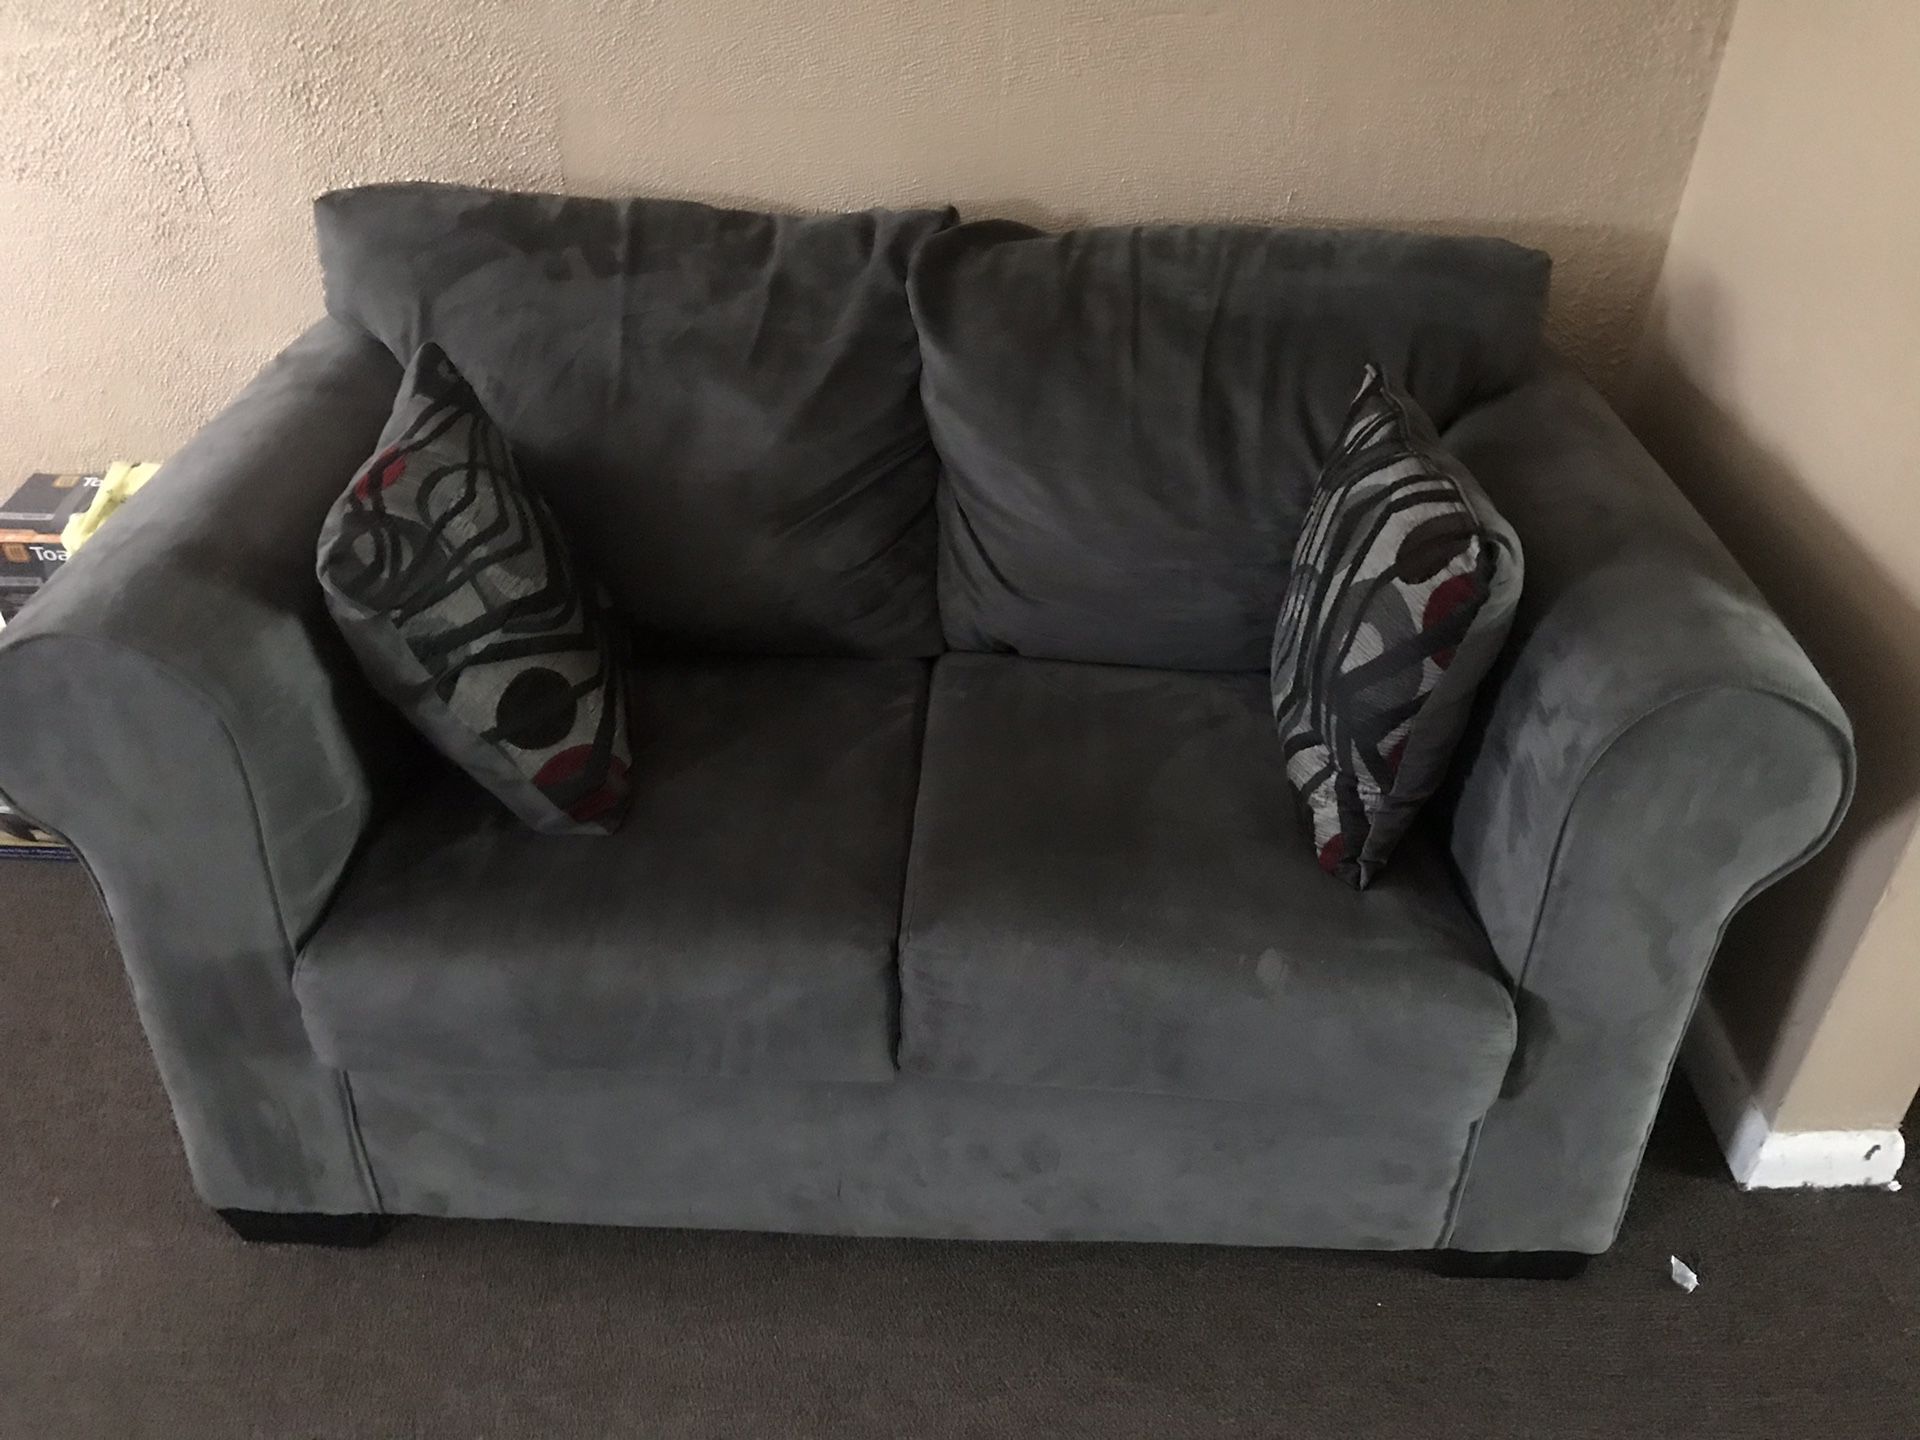 Two sofas